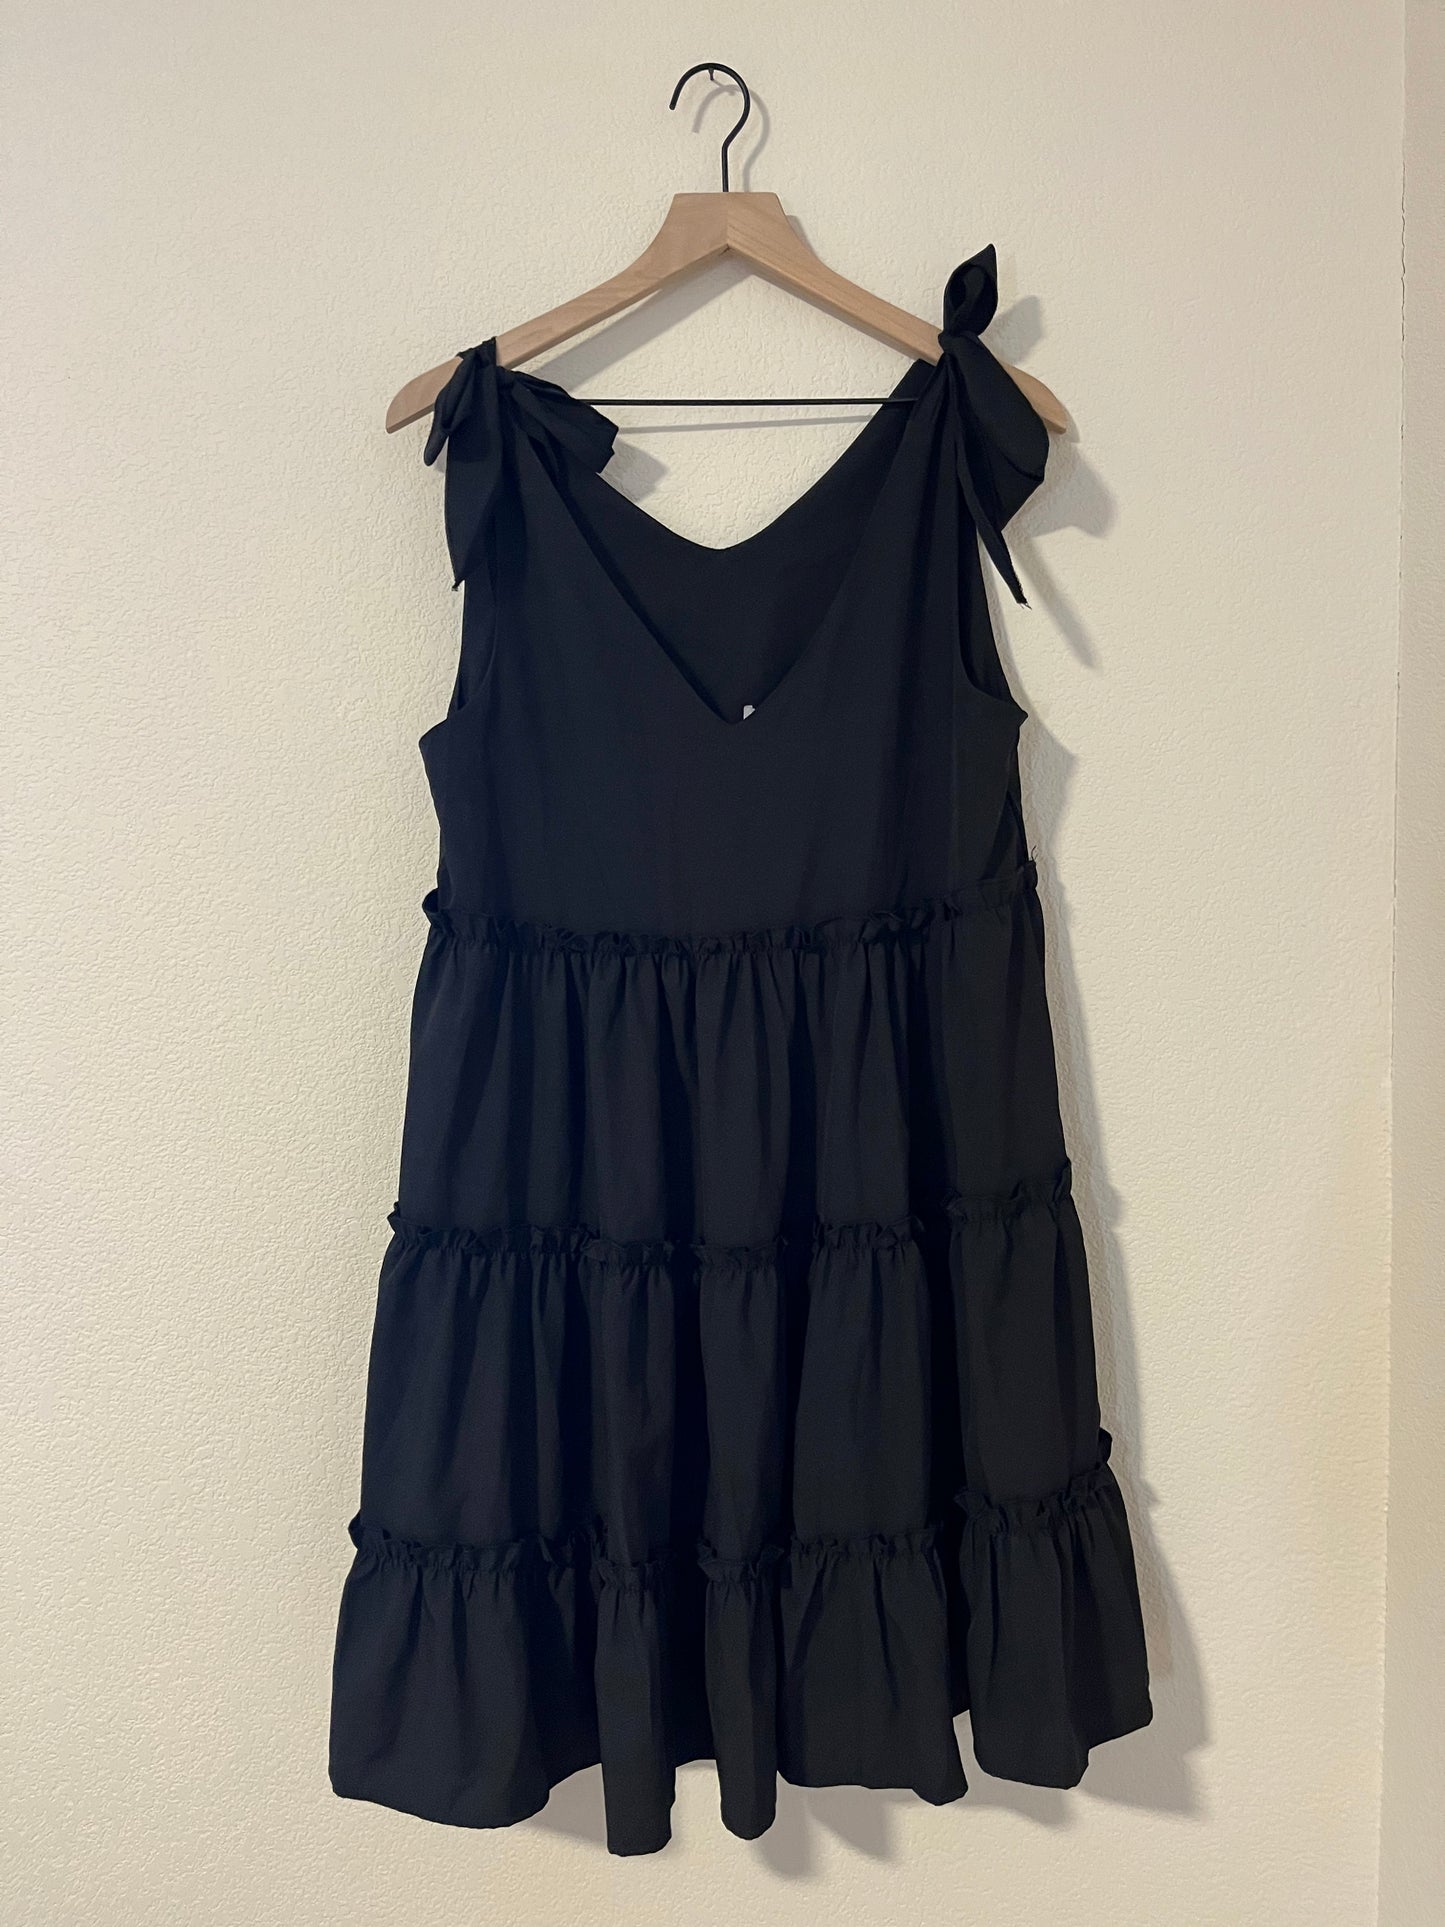 Black Dress-Dresses/Rompers-Spring Street Boutique-Spring Street Boutique, women's online fashion boutique in Palmer, Alaska